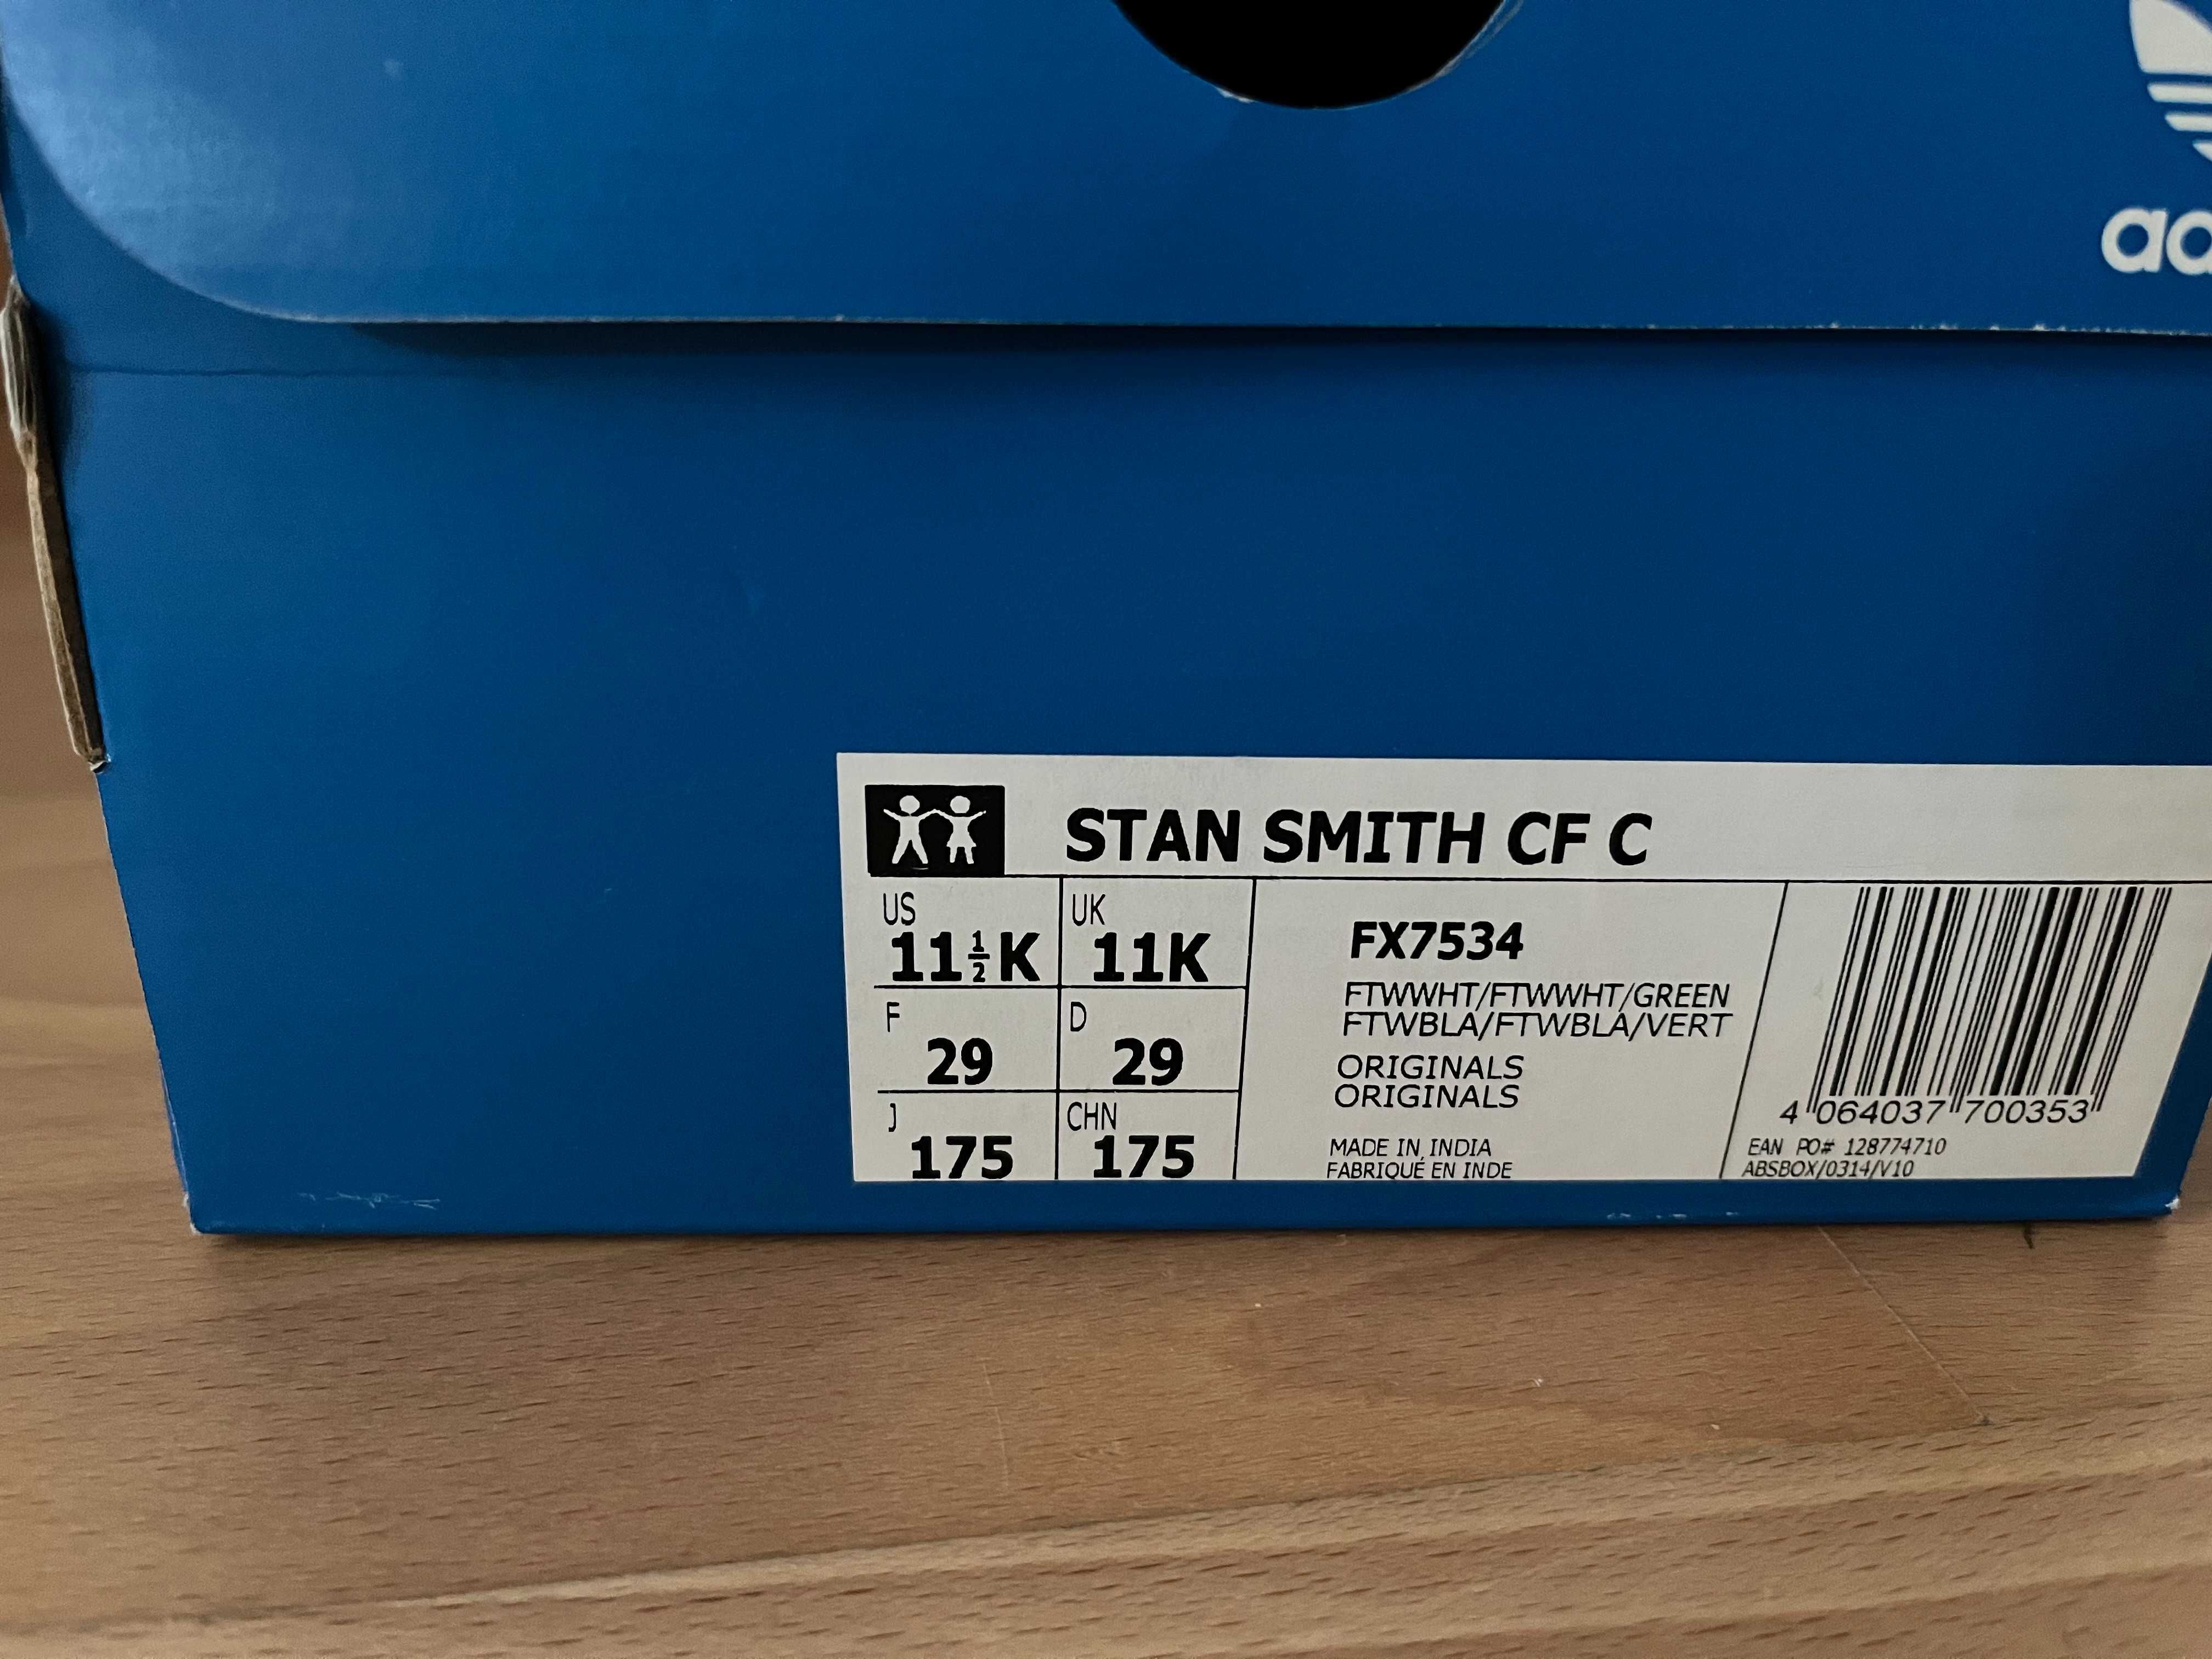 Adidas Stan Smith dla dzieci na rzepy rozmiar 29, 17,5 cm